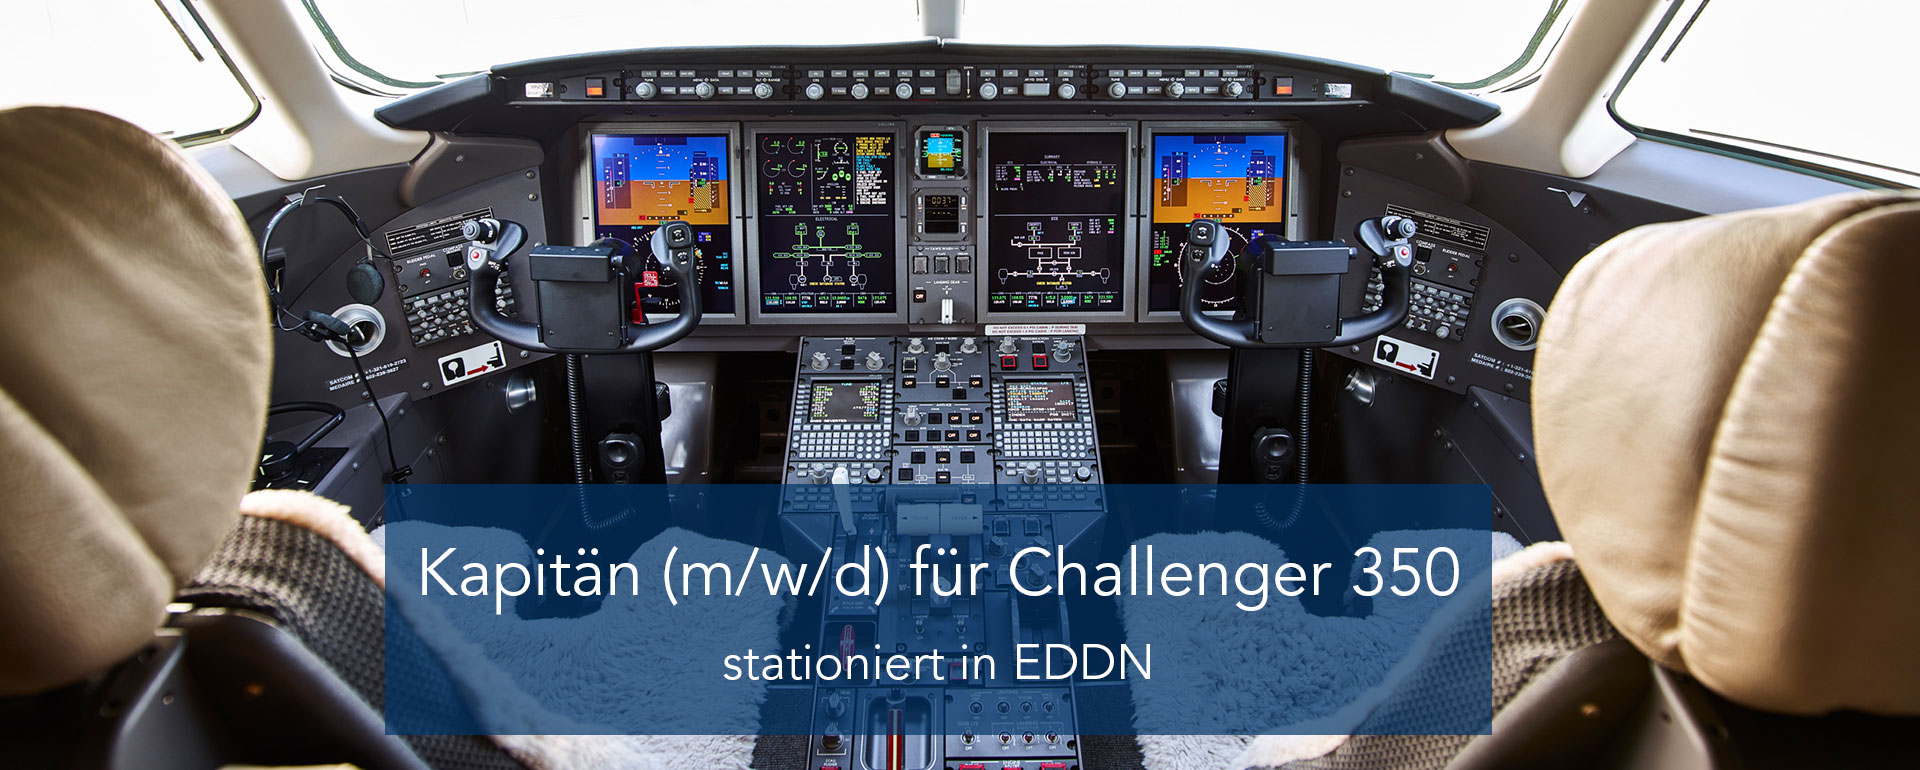 Kapitän (m/w/d) für Challenger 350 | stationiert in EDDN